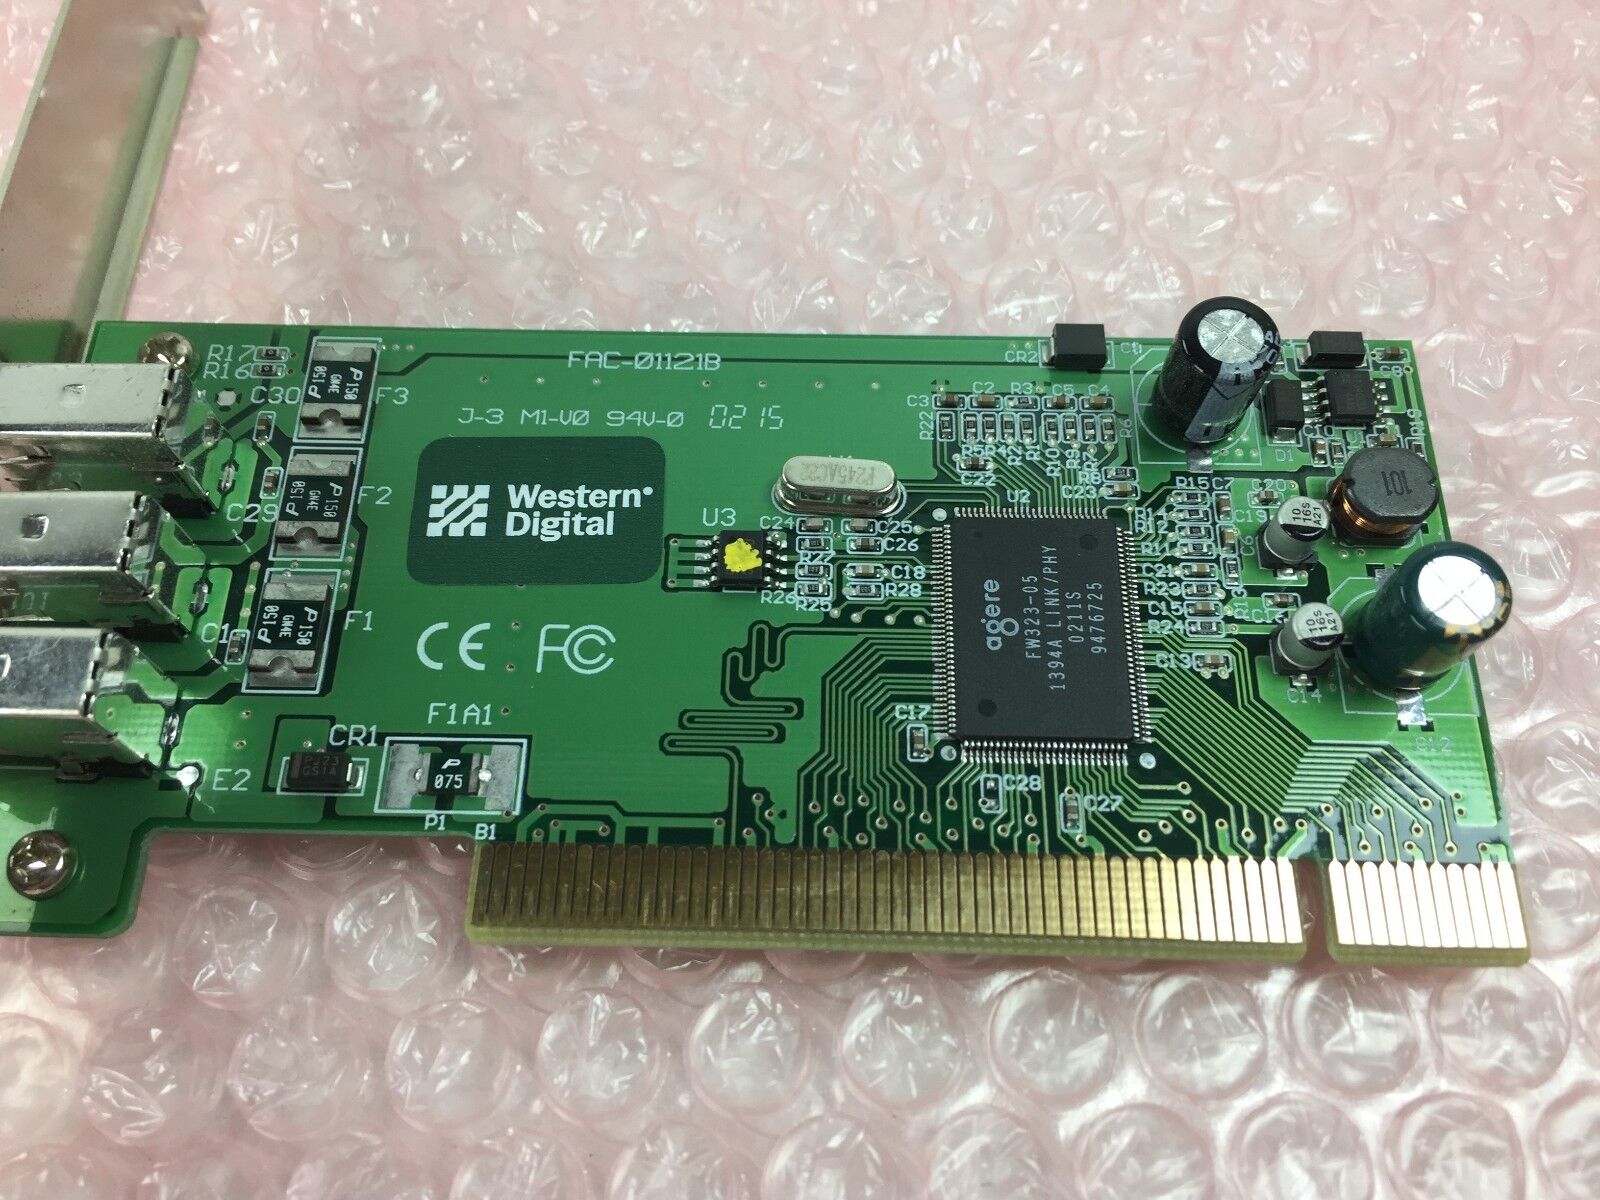 Western Digital FireWire PCI Adapter 1394 i.LINK Compatable MAC, PC WDAD004-RNW